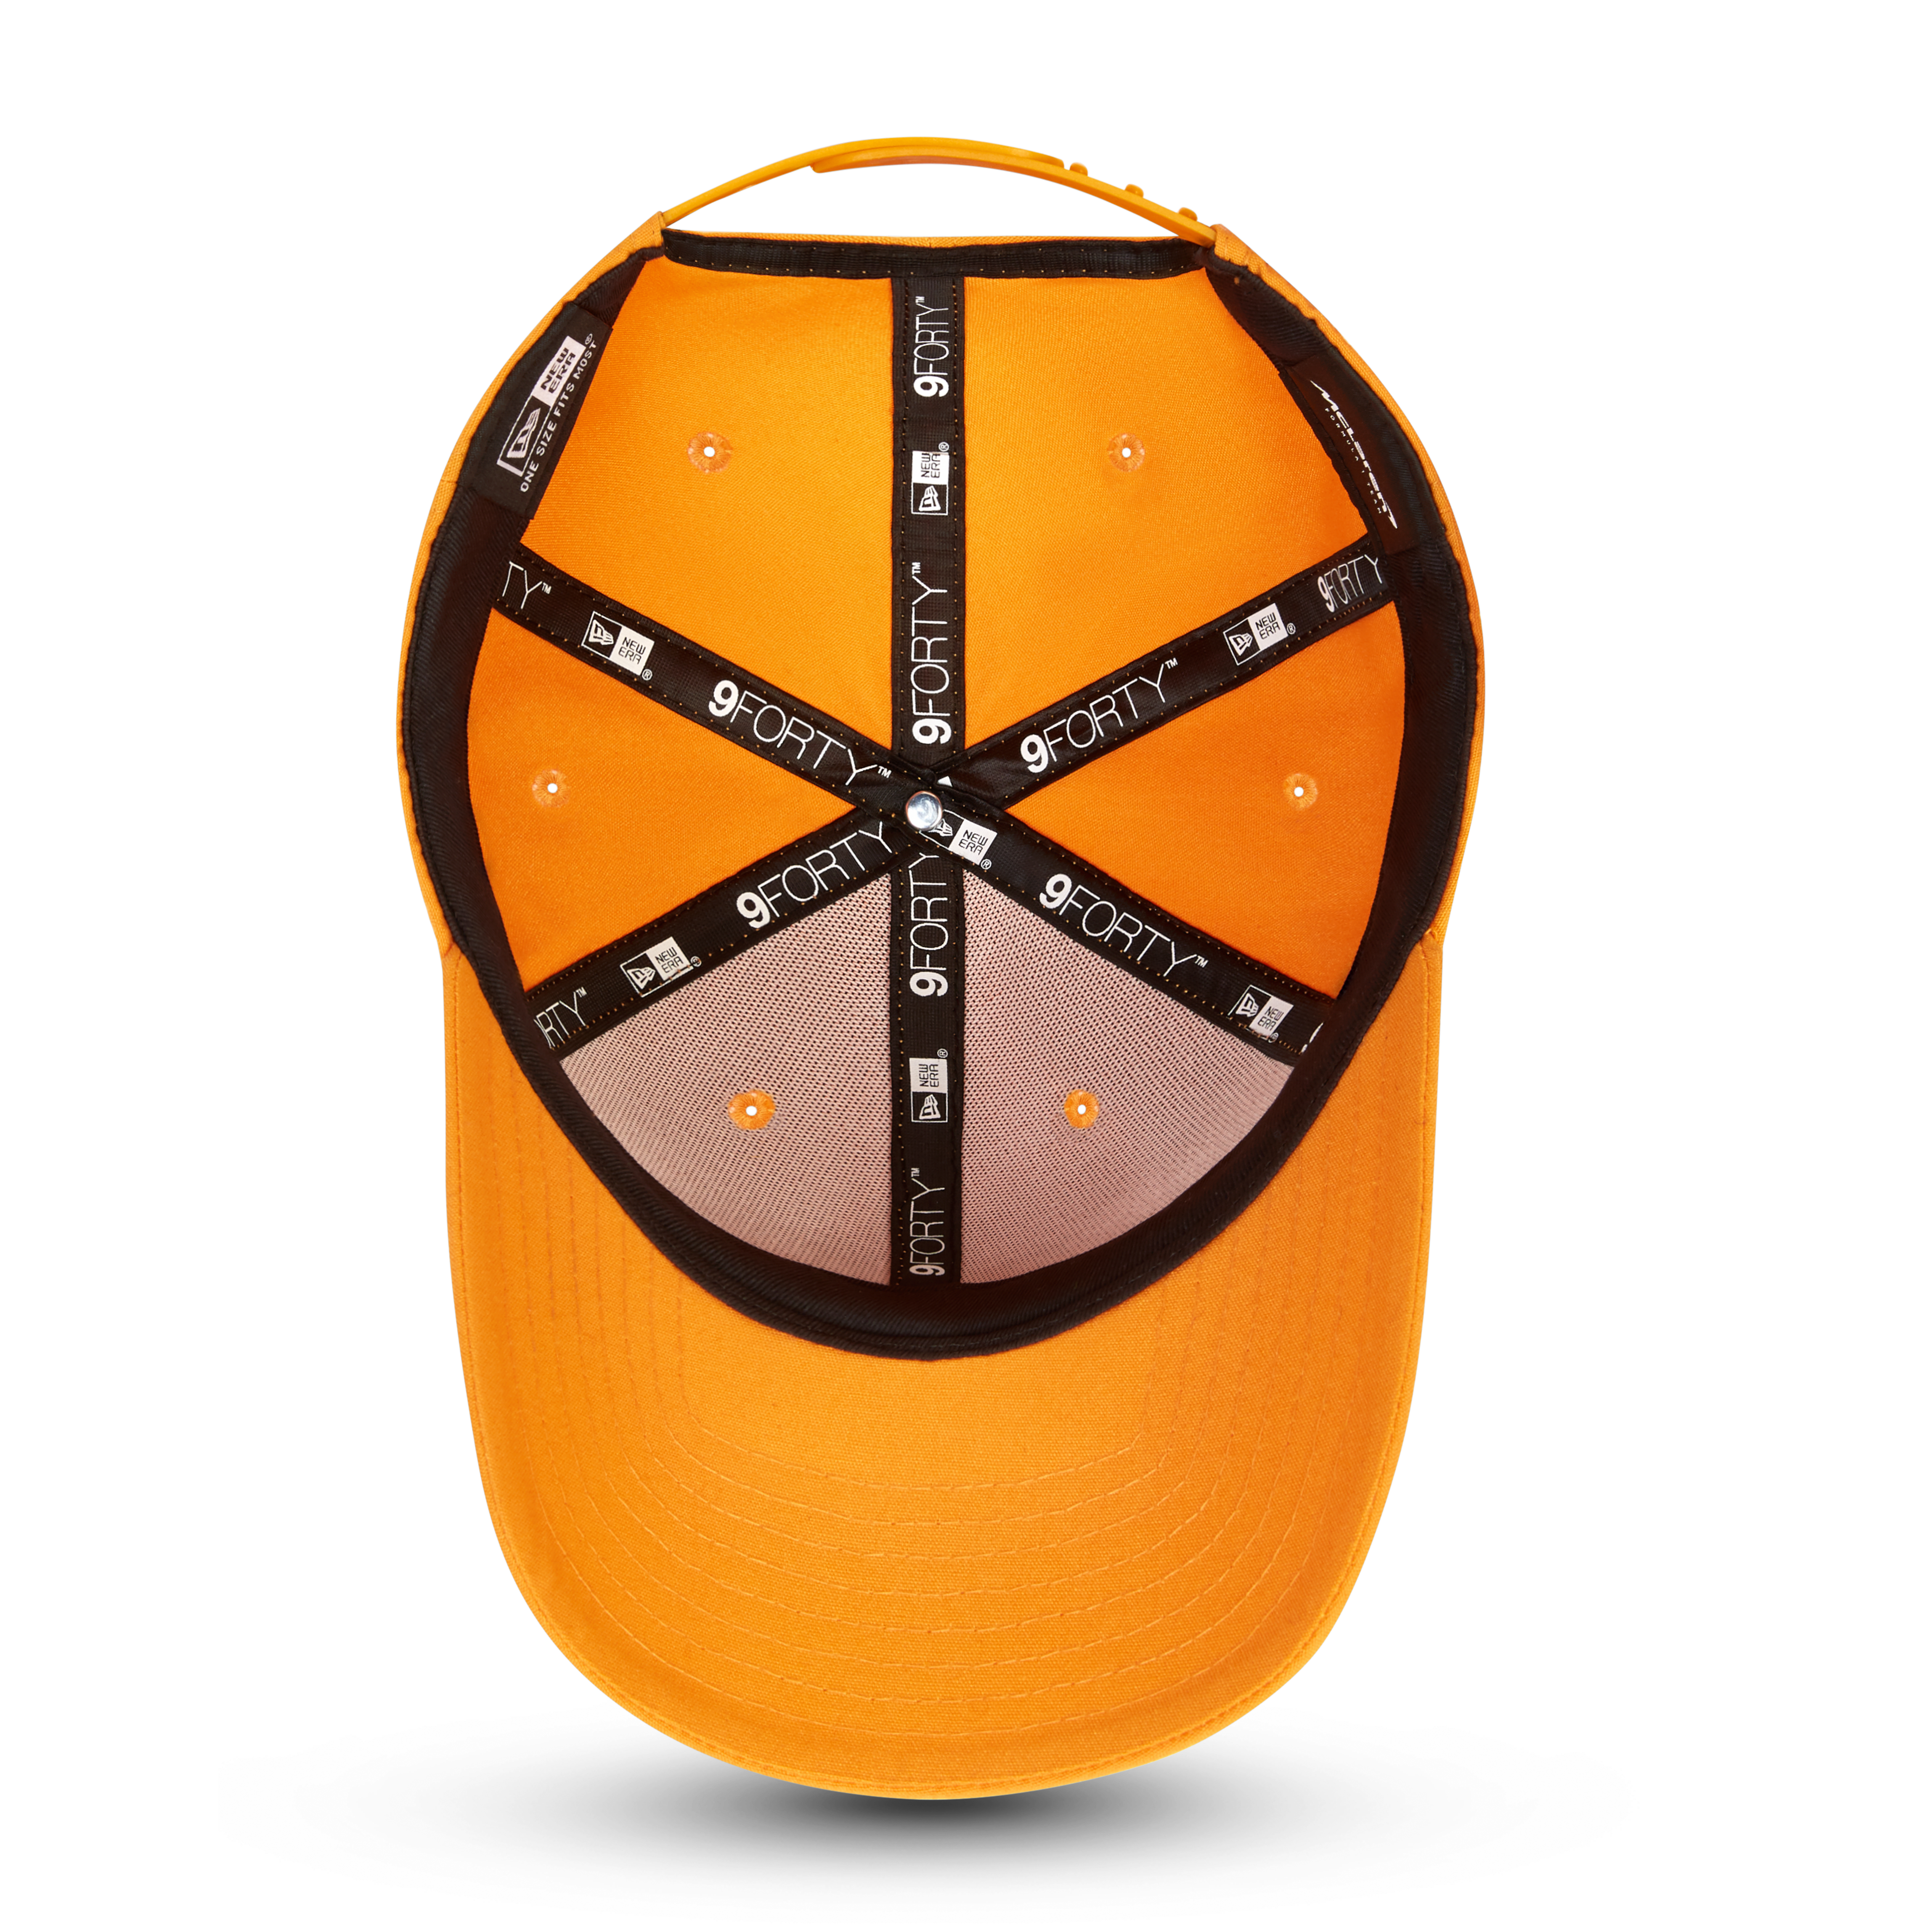 McLaren F1 Essential Logo Hat Orange